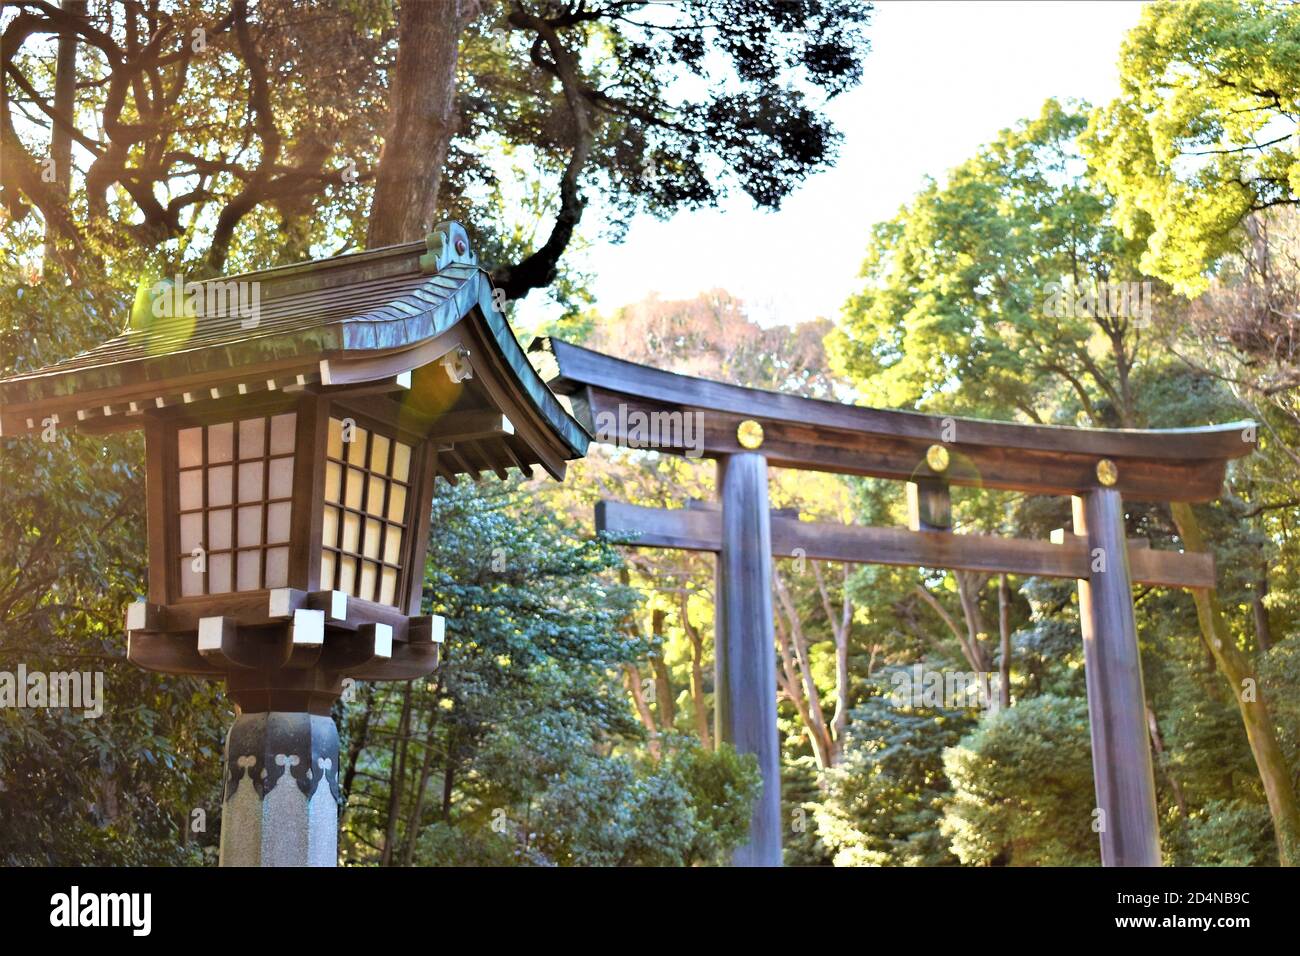 Eine traditionelle japanische Holzlaterne und ein großes Torii-Tor Oder Bogen begrüßt eifrige Anhänger zu einem schintoistischen Schrein Stockfoto